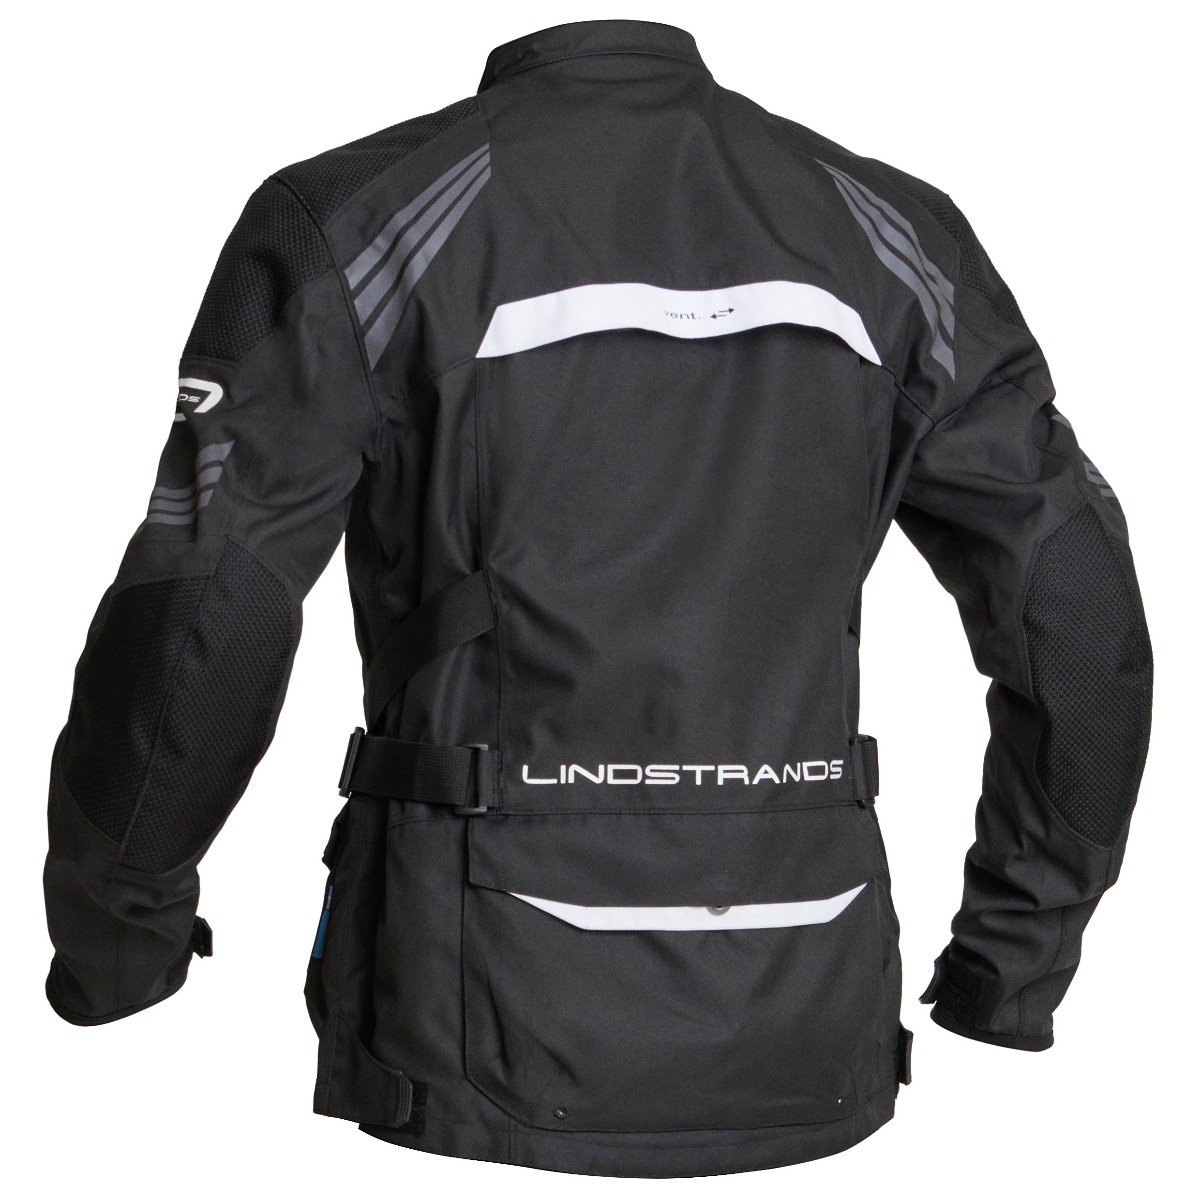 Image of Lindstrands Transtrand Jacket Black White Size 58 EN